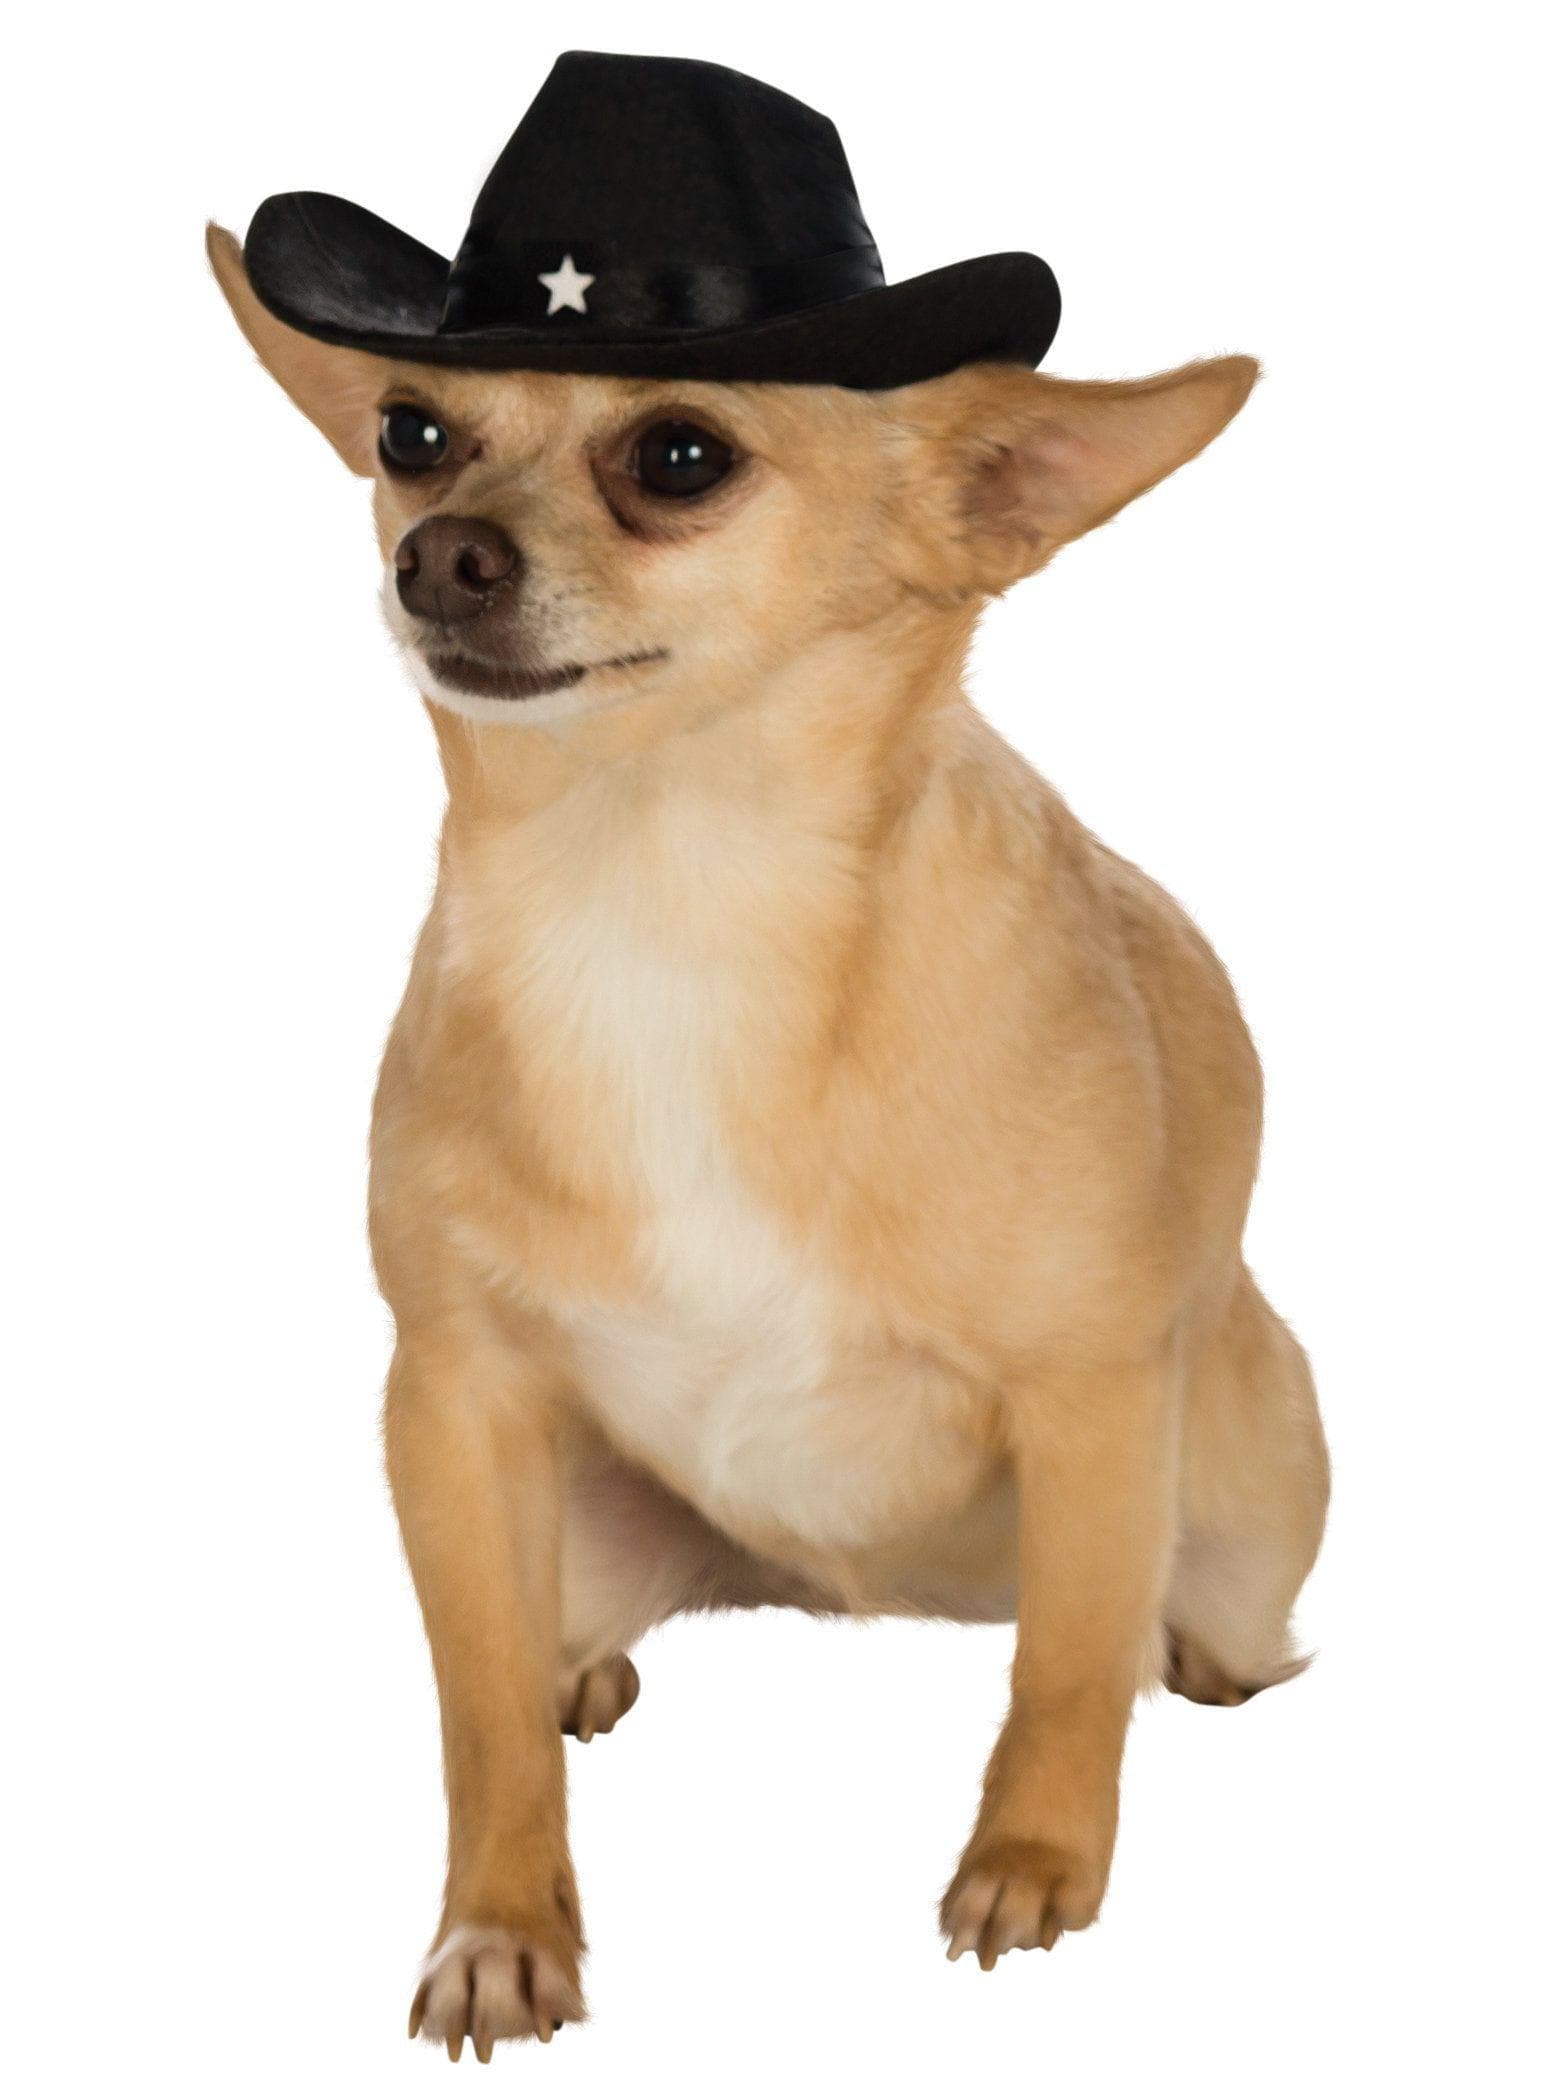 Black Pet Cowboy Hat - costumes.com